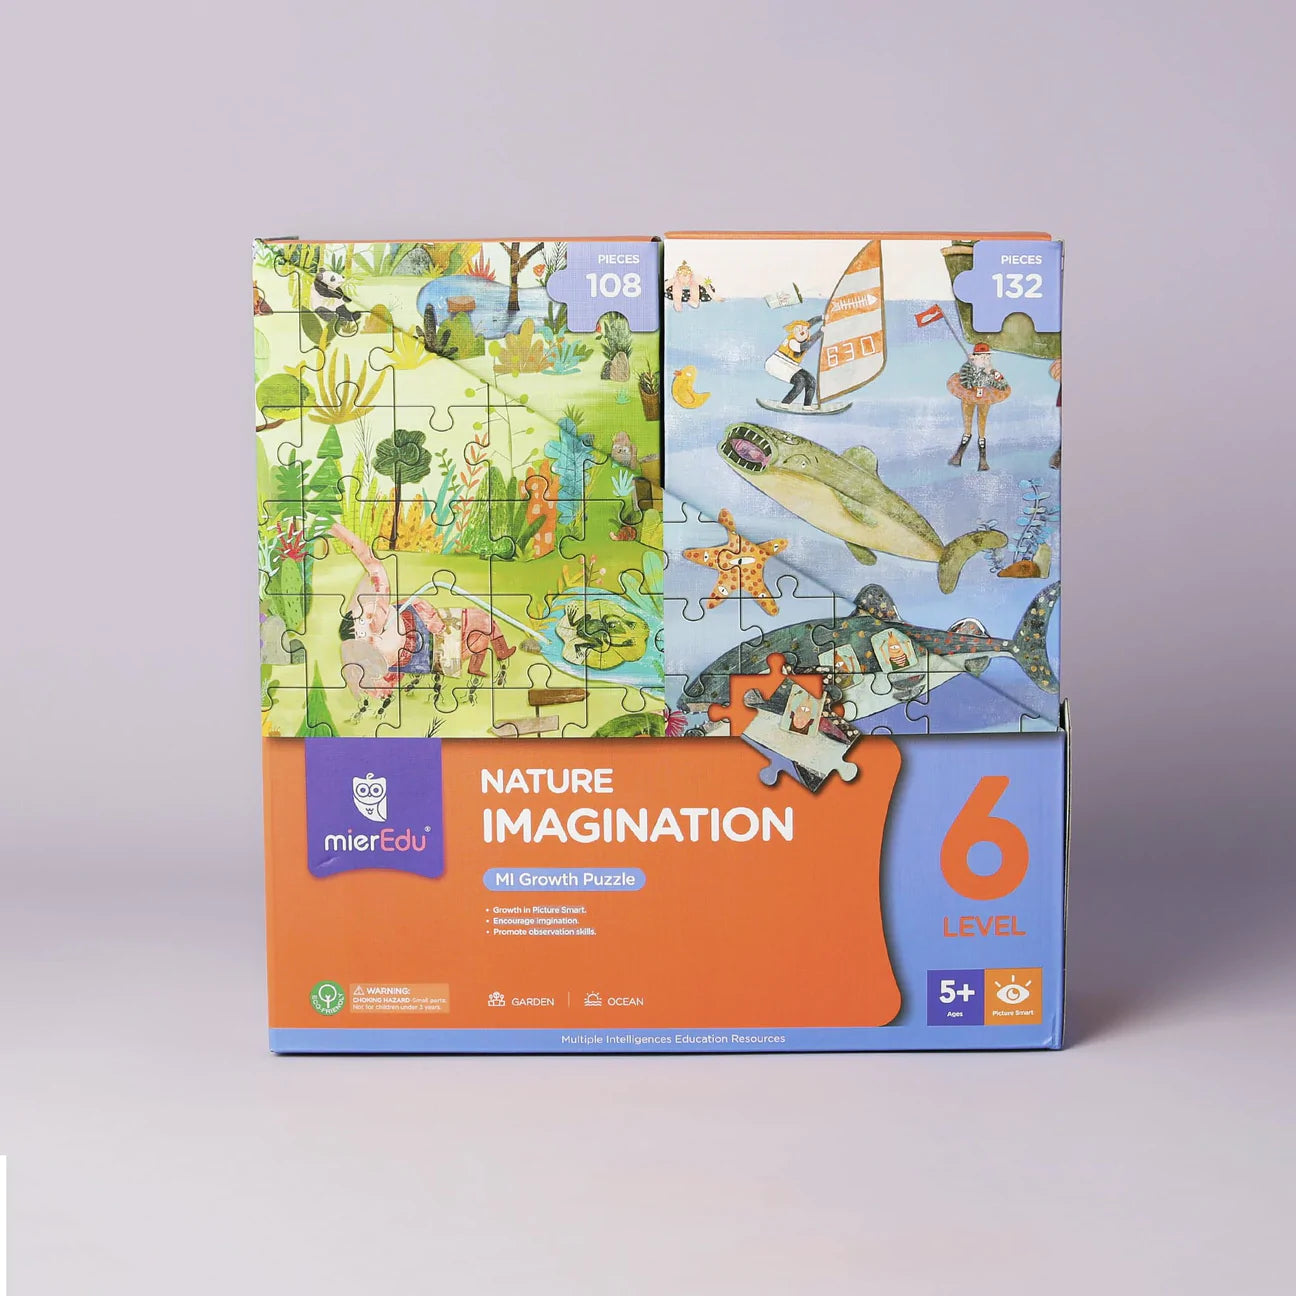 mierEdu | Growth Puzzle L6 - Nature Imagination